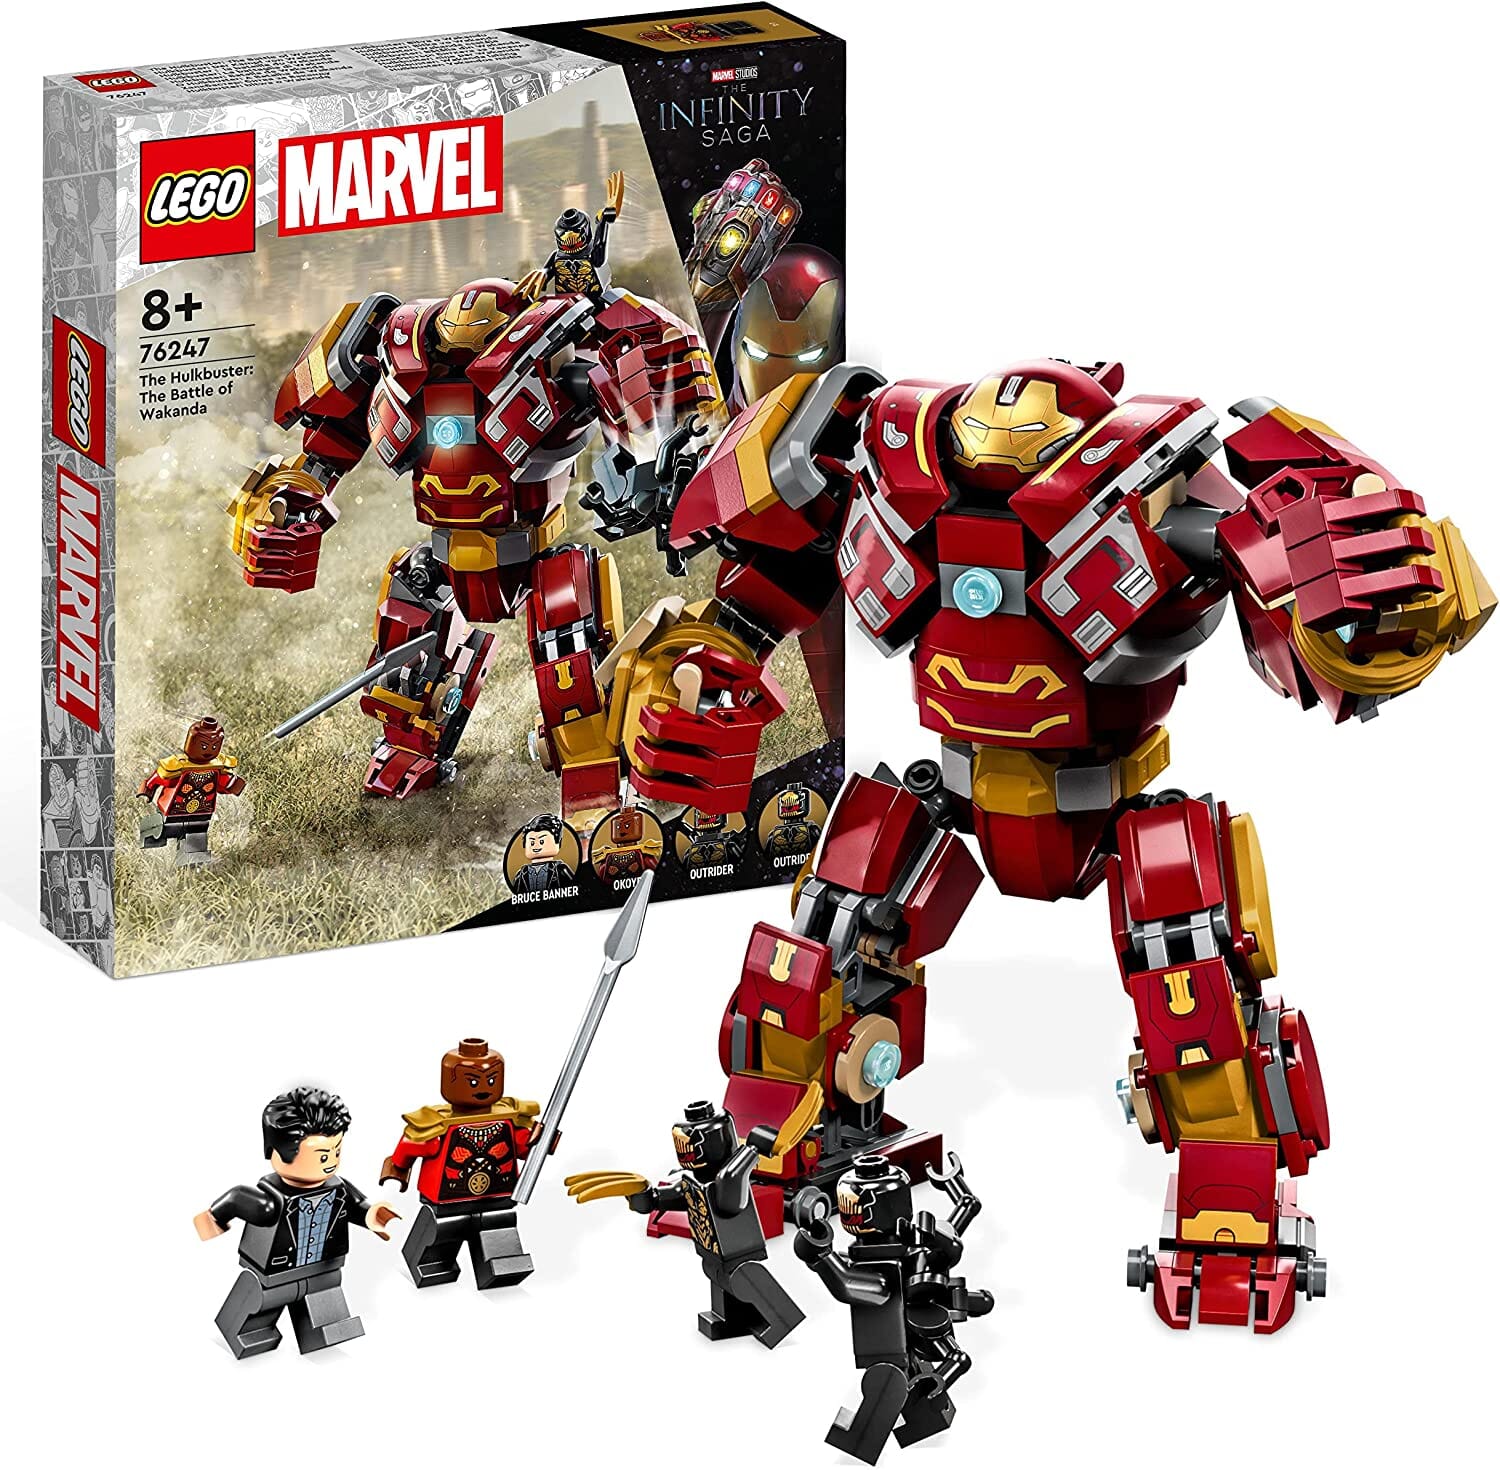 LEGO 76247 Marvel Hulkbuster: La Battaglia di Wakanda toysvaldichiana.it 